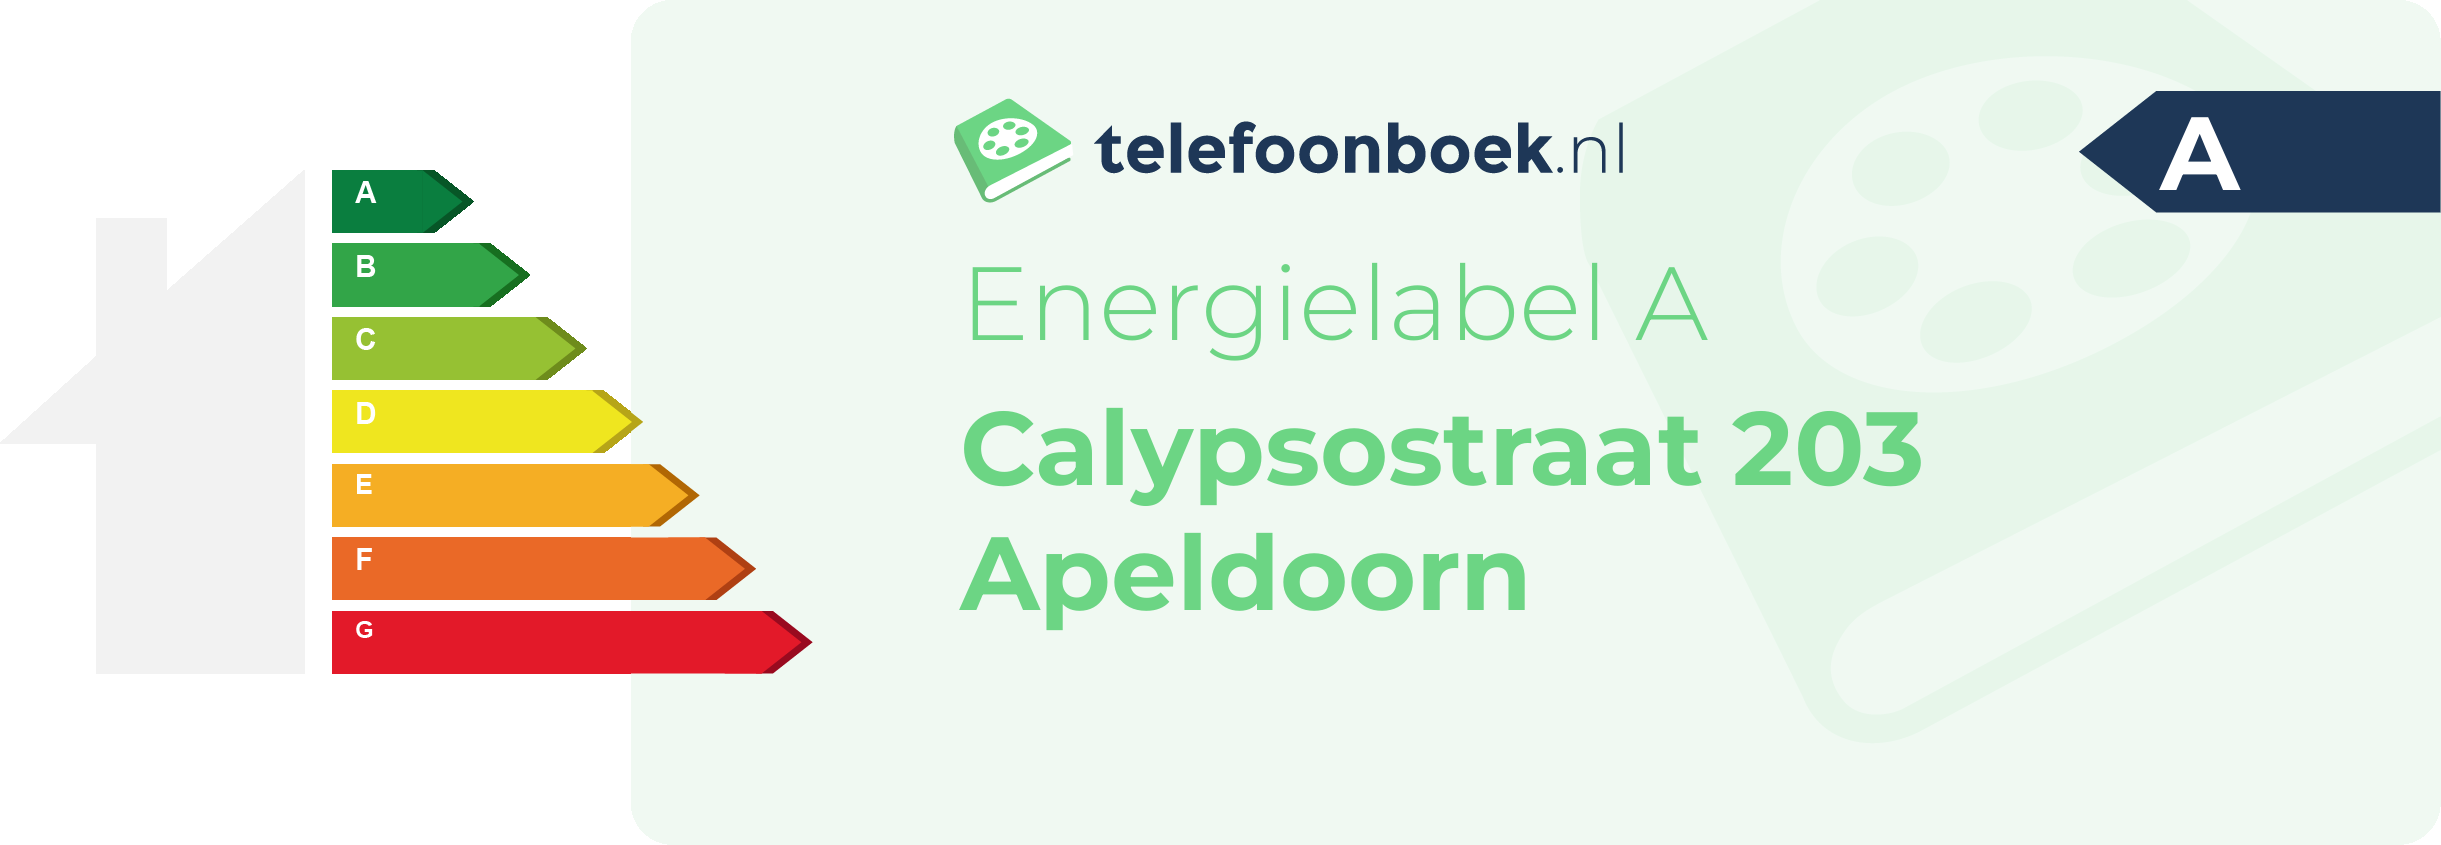 Energielabel Calypsostraat 203 Apeldoorn